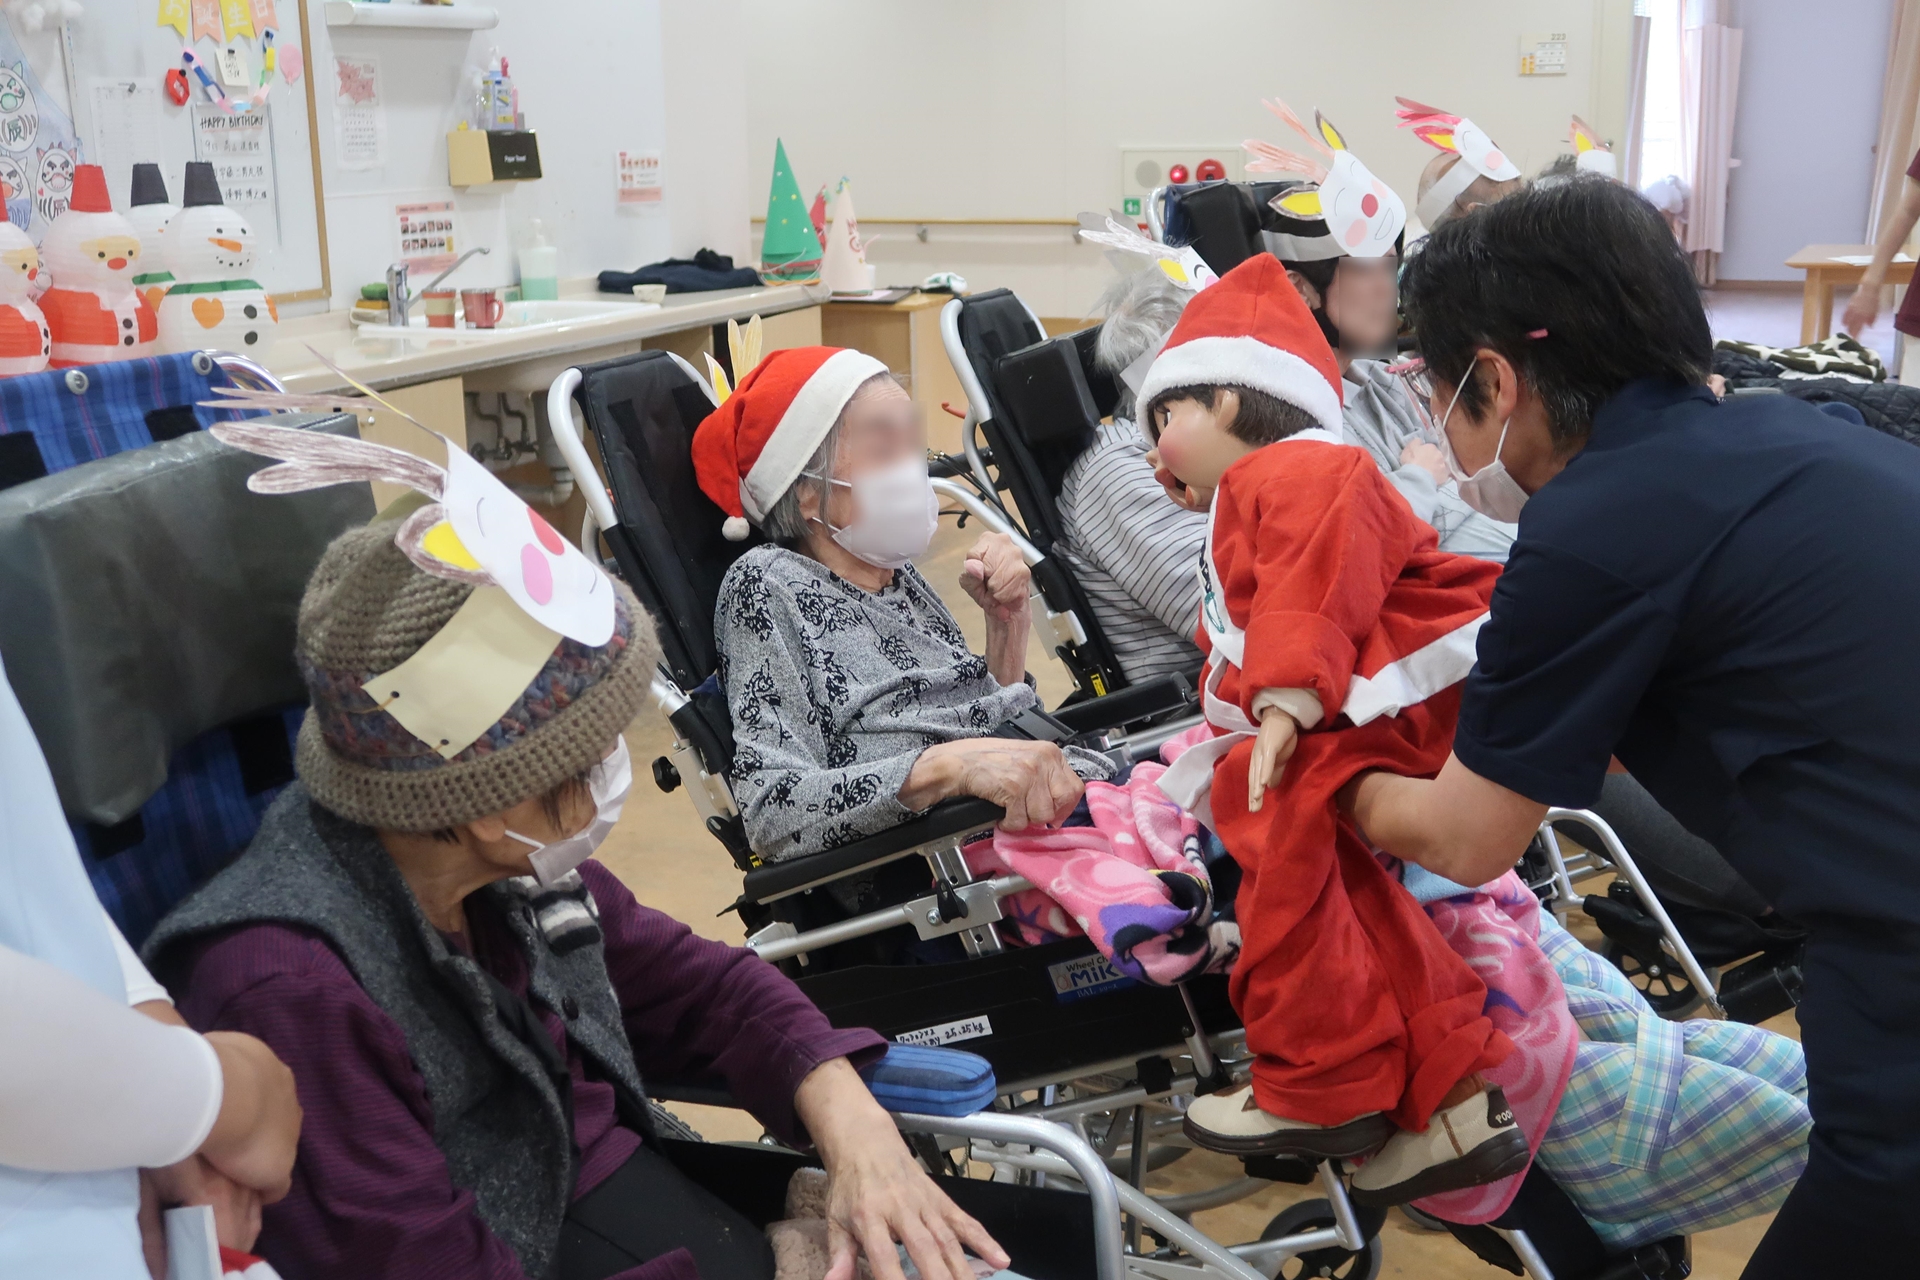 介護老人保健施設 ザ・シーズンの2階フロアクリスマス会で、ご利用者様笑顔いっぱいの画像です